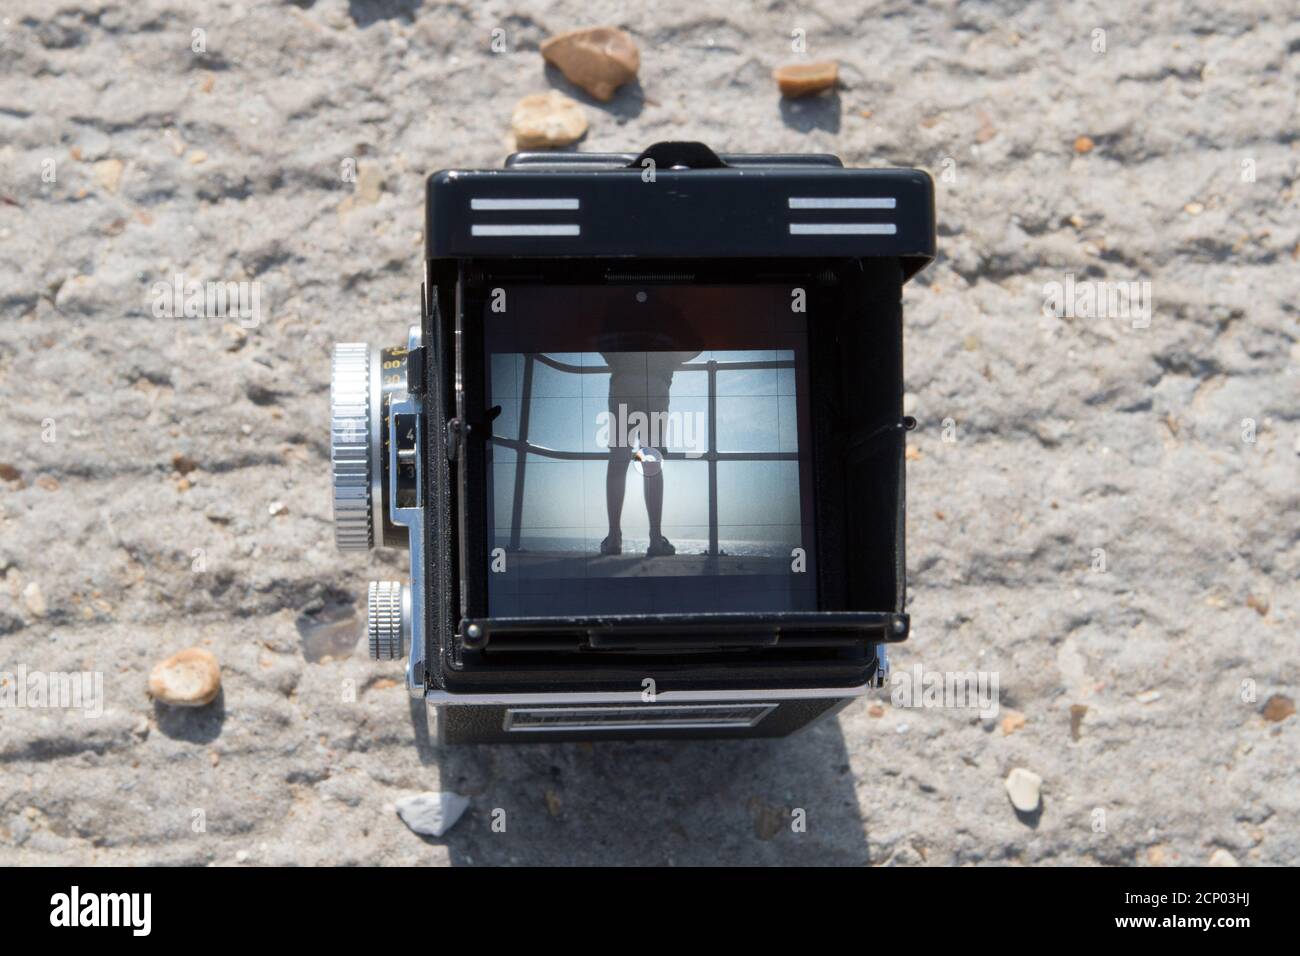 Un appareil photo reflex numérique Rolleiflex vintage qui permet de cadrer un sujet une scène de plage dans le viseur Banque D'Images